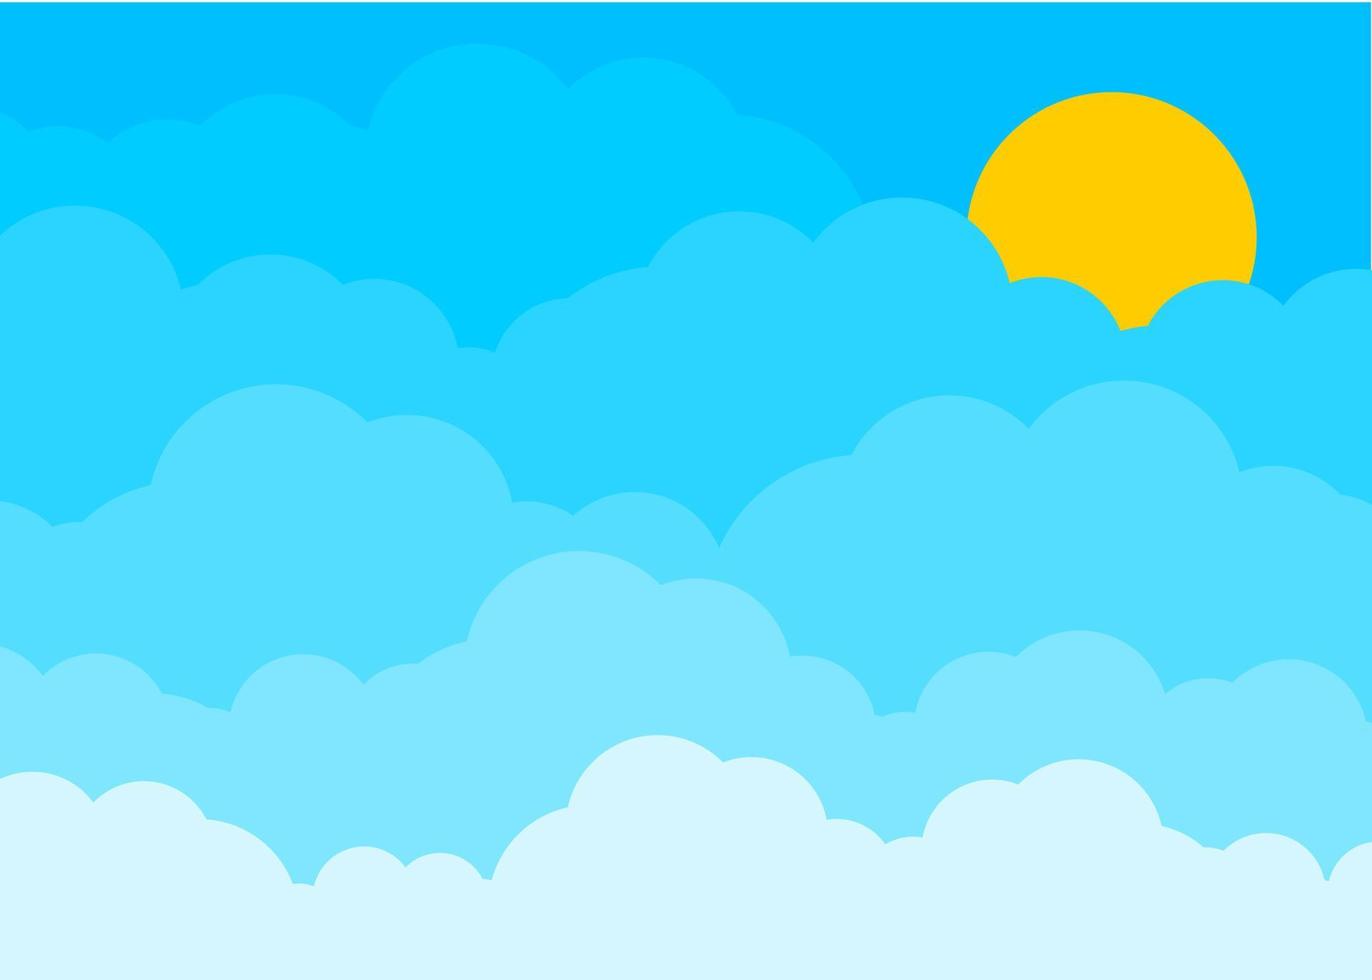 disegno vettoriale dell'illustrazione della nuvola del cielo blu